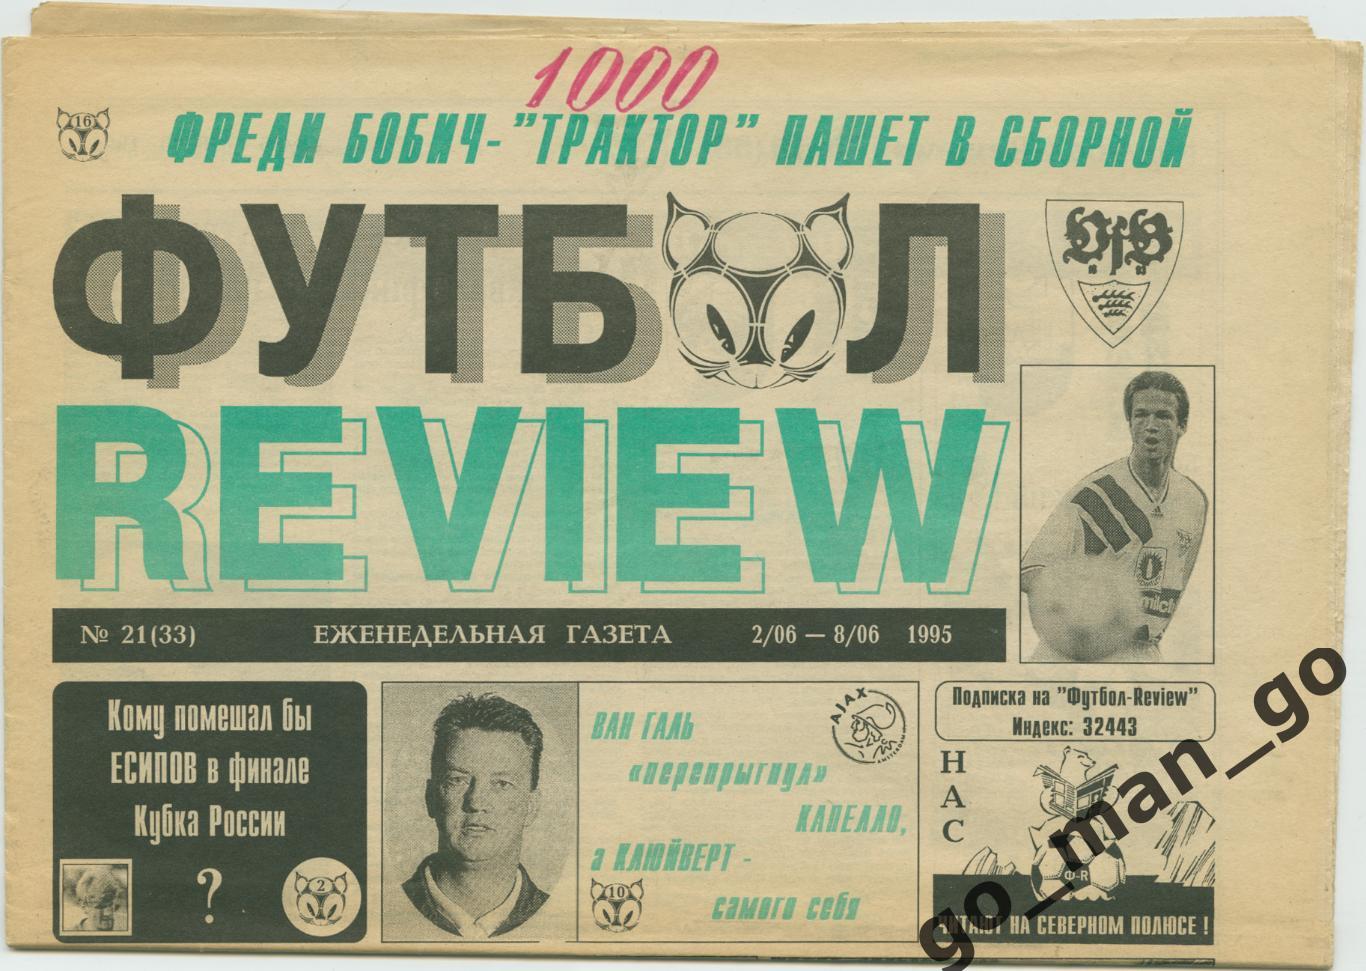 Еженедельник Футбол-Review (Футбол-Ревю), 02-08.06.1995, № 21.